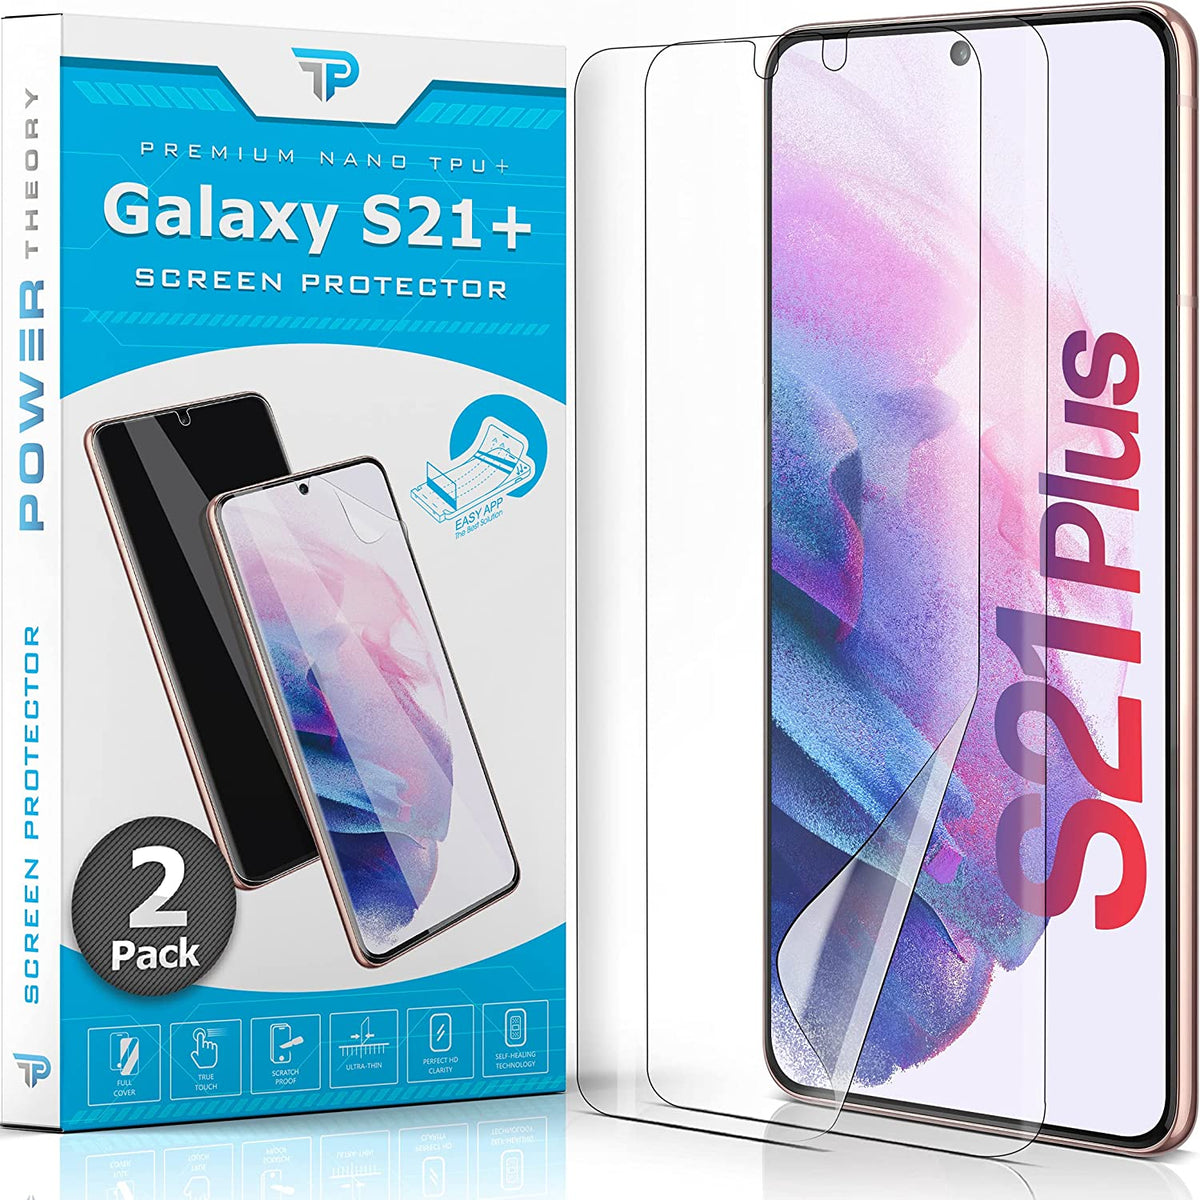 Power Theory Schutzfolie für Samsung Galaxy S21 PLUS 5G [2 Stück] - [KEIN GLAS] Cover